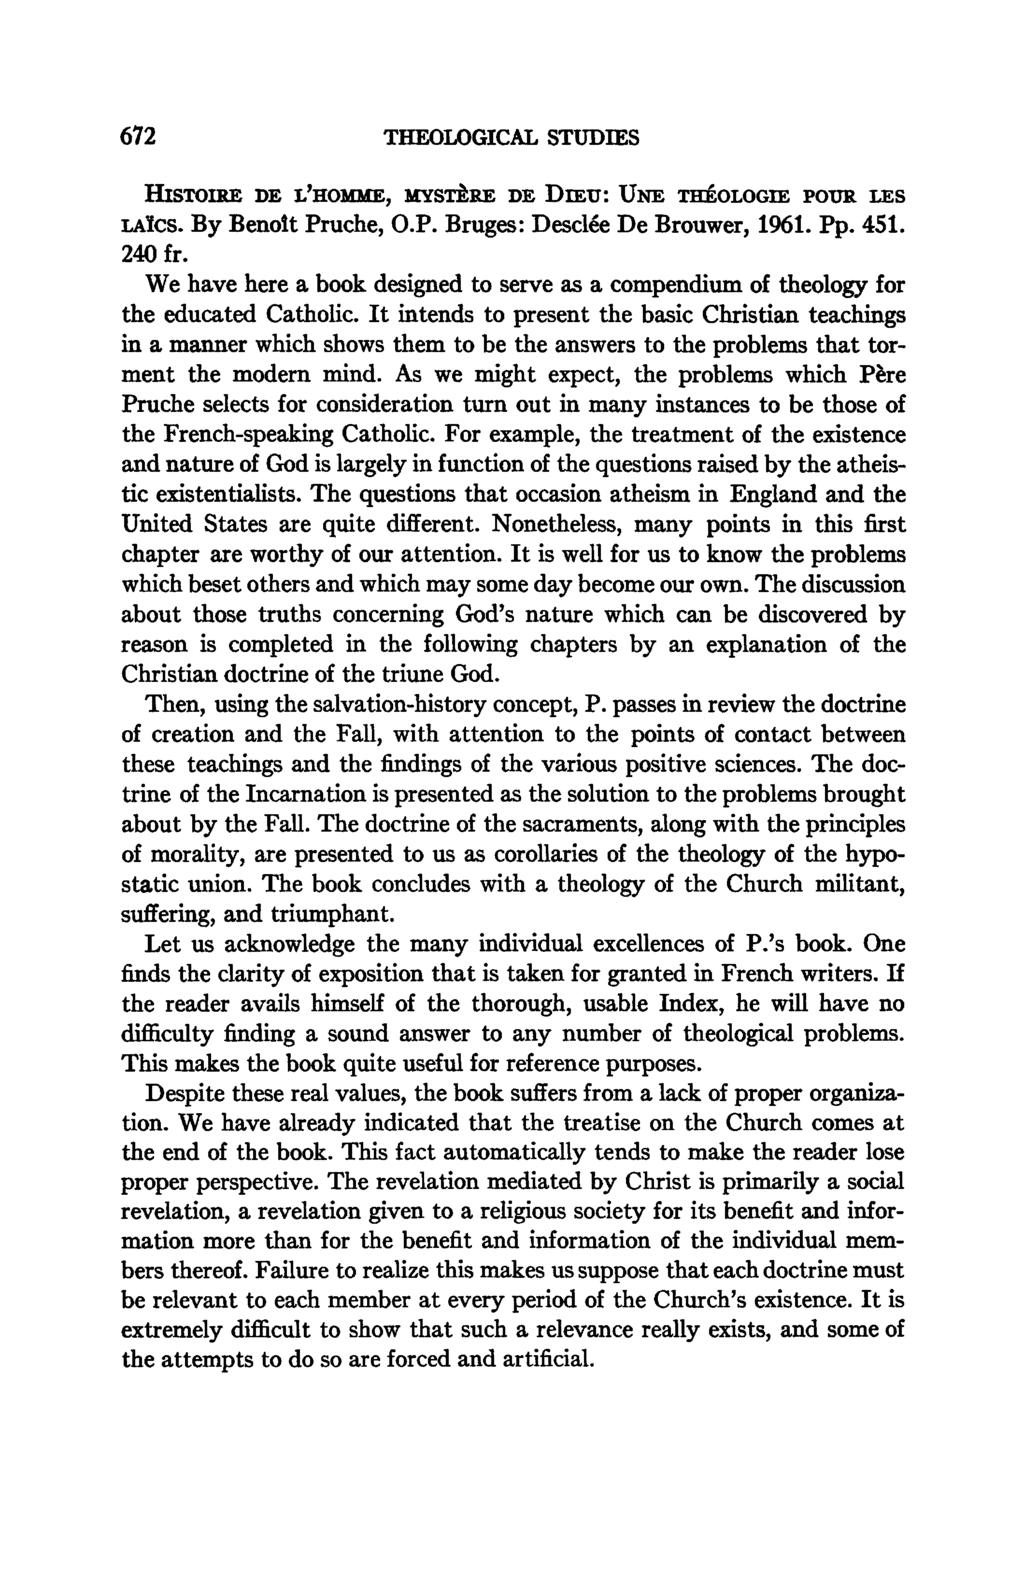 672 THEOLOGICAL STUDIES HISTOIRE DE L'HOMME, MYSTÈRE DE DIEU: UNE THÉOLOGIE POUR LES LAÏCS. By Benoît Pruche, O.P. Bruges: Desclée De Brouwer, 1961. Pp. 4SI. 240 fr.